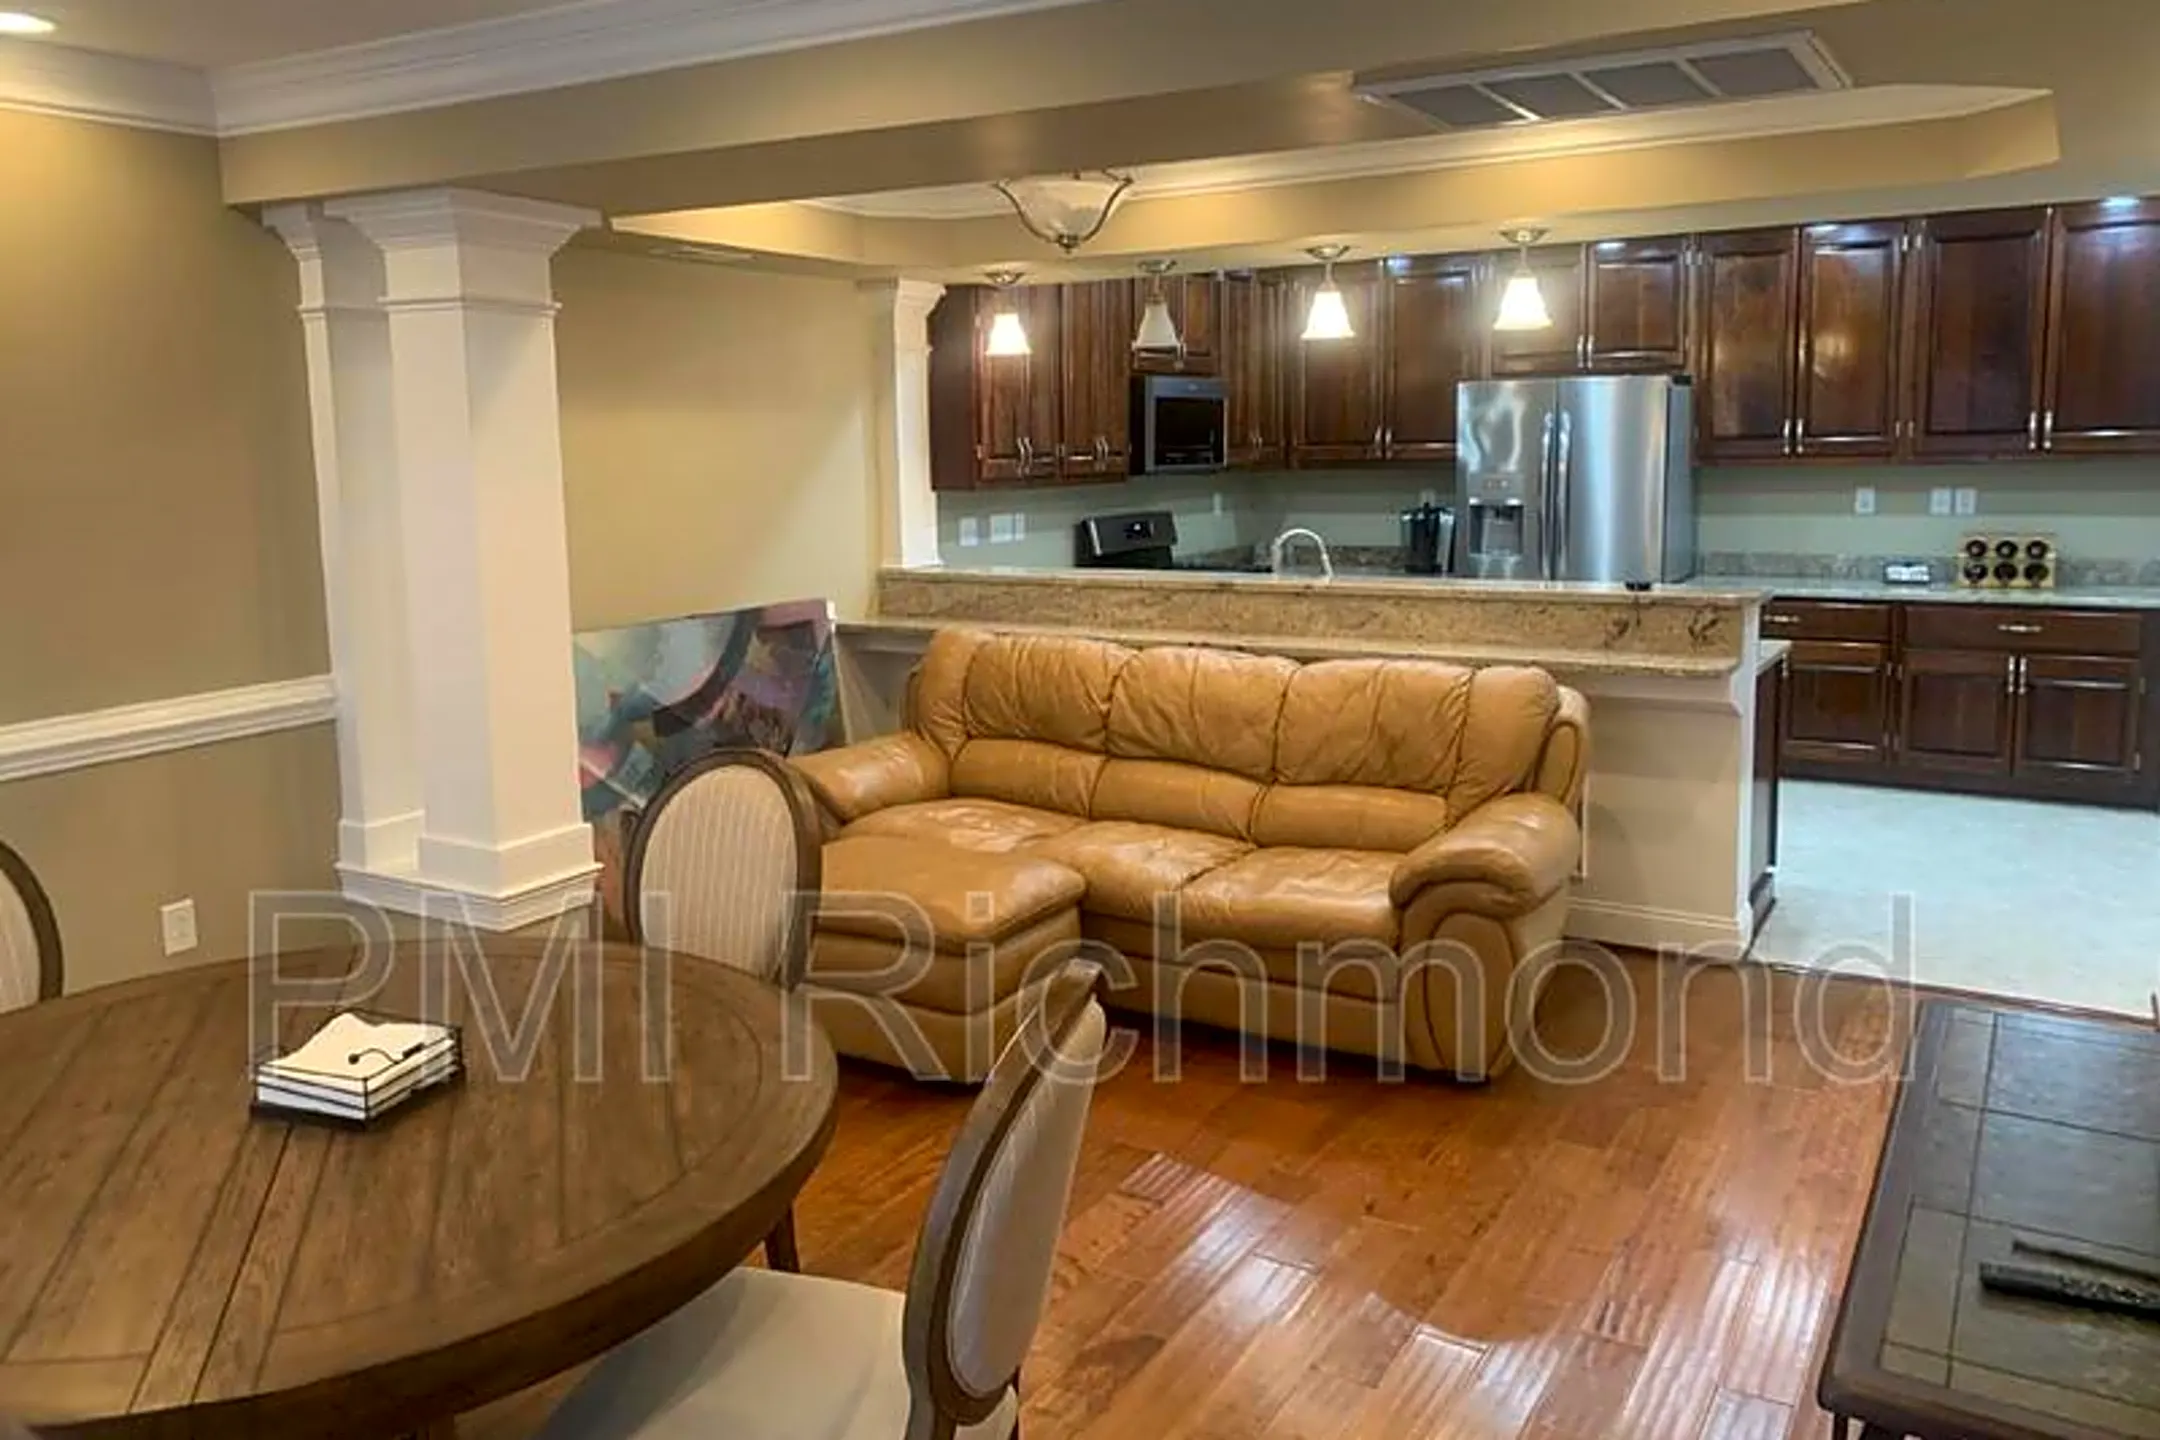 Living Room - 2106 Cedar Street - Richmond, VA